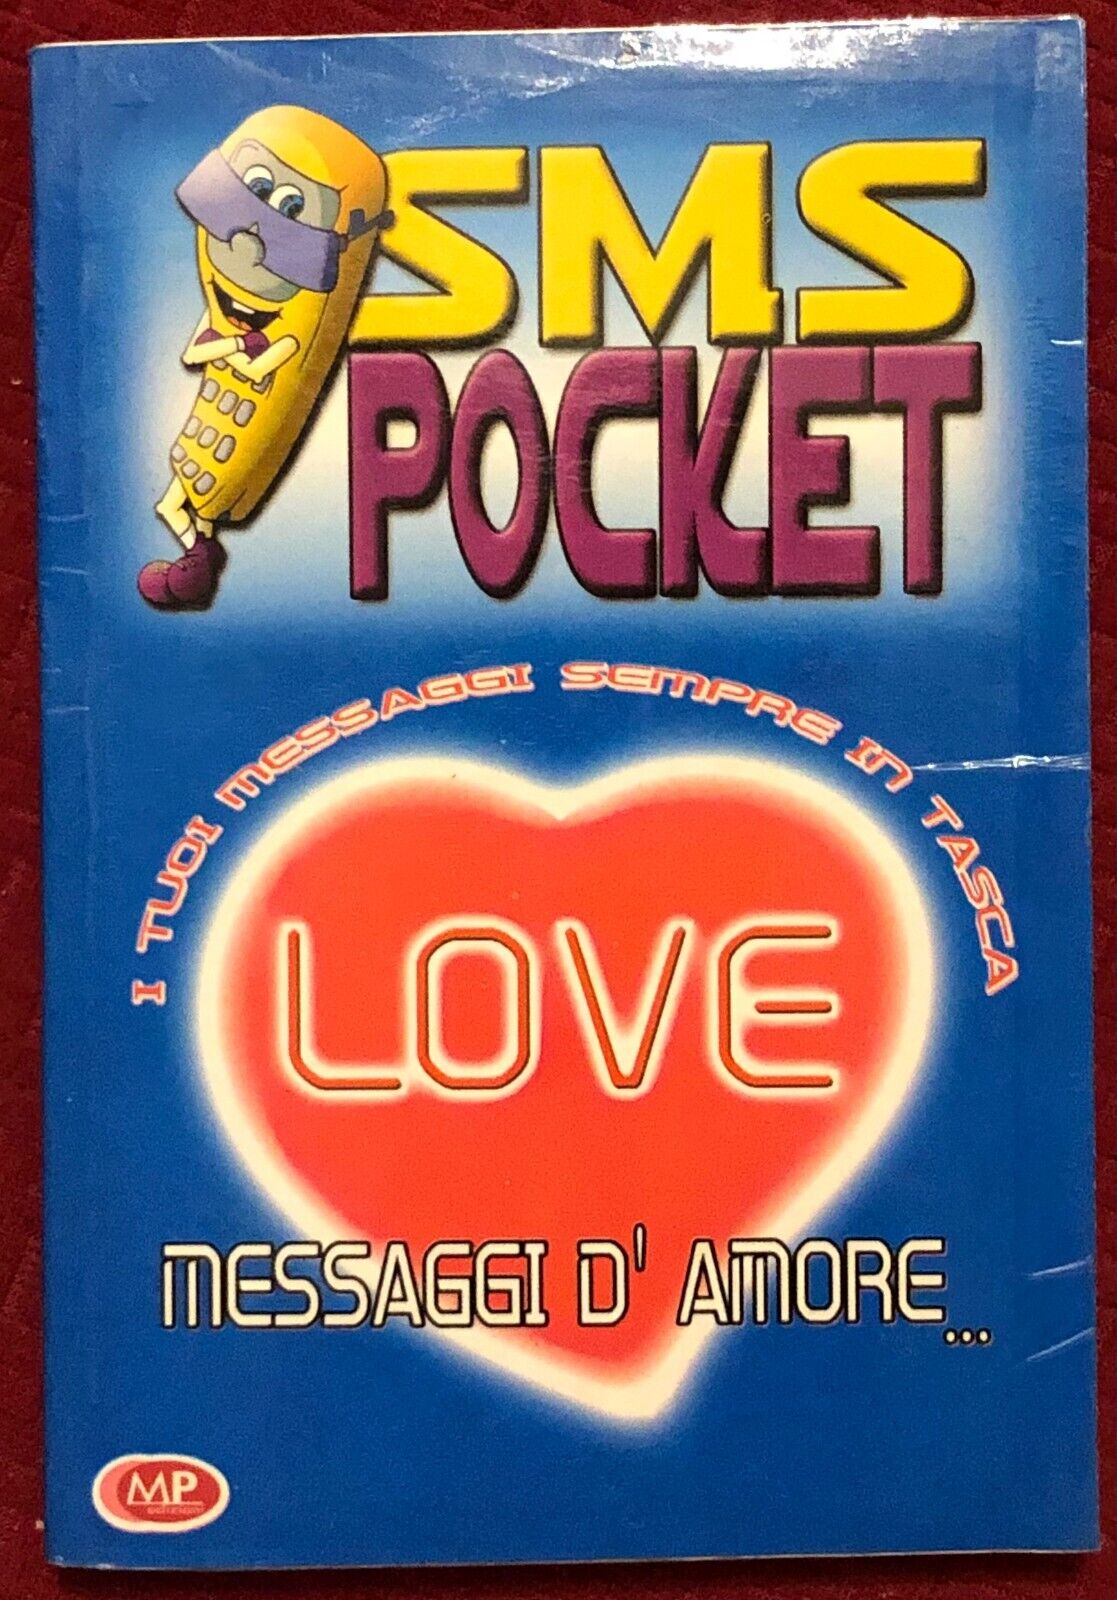 SMS Pocket Love. Messaggi d'amore... di Aa.vv.,  2002,  Mp Edizioni